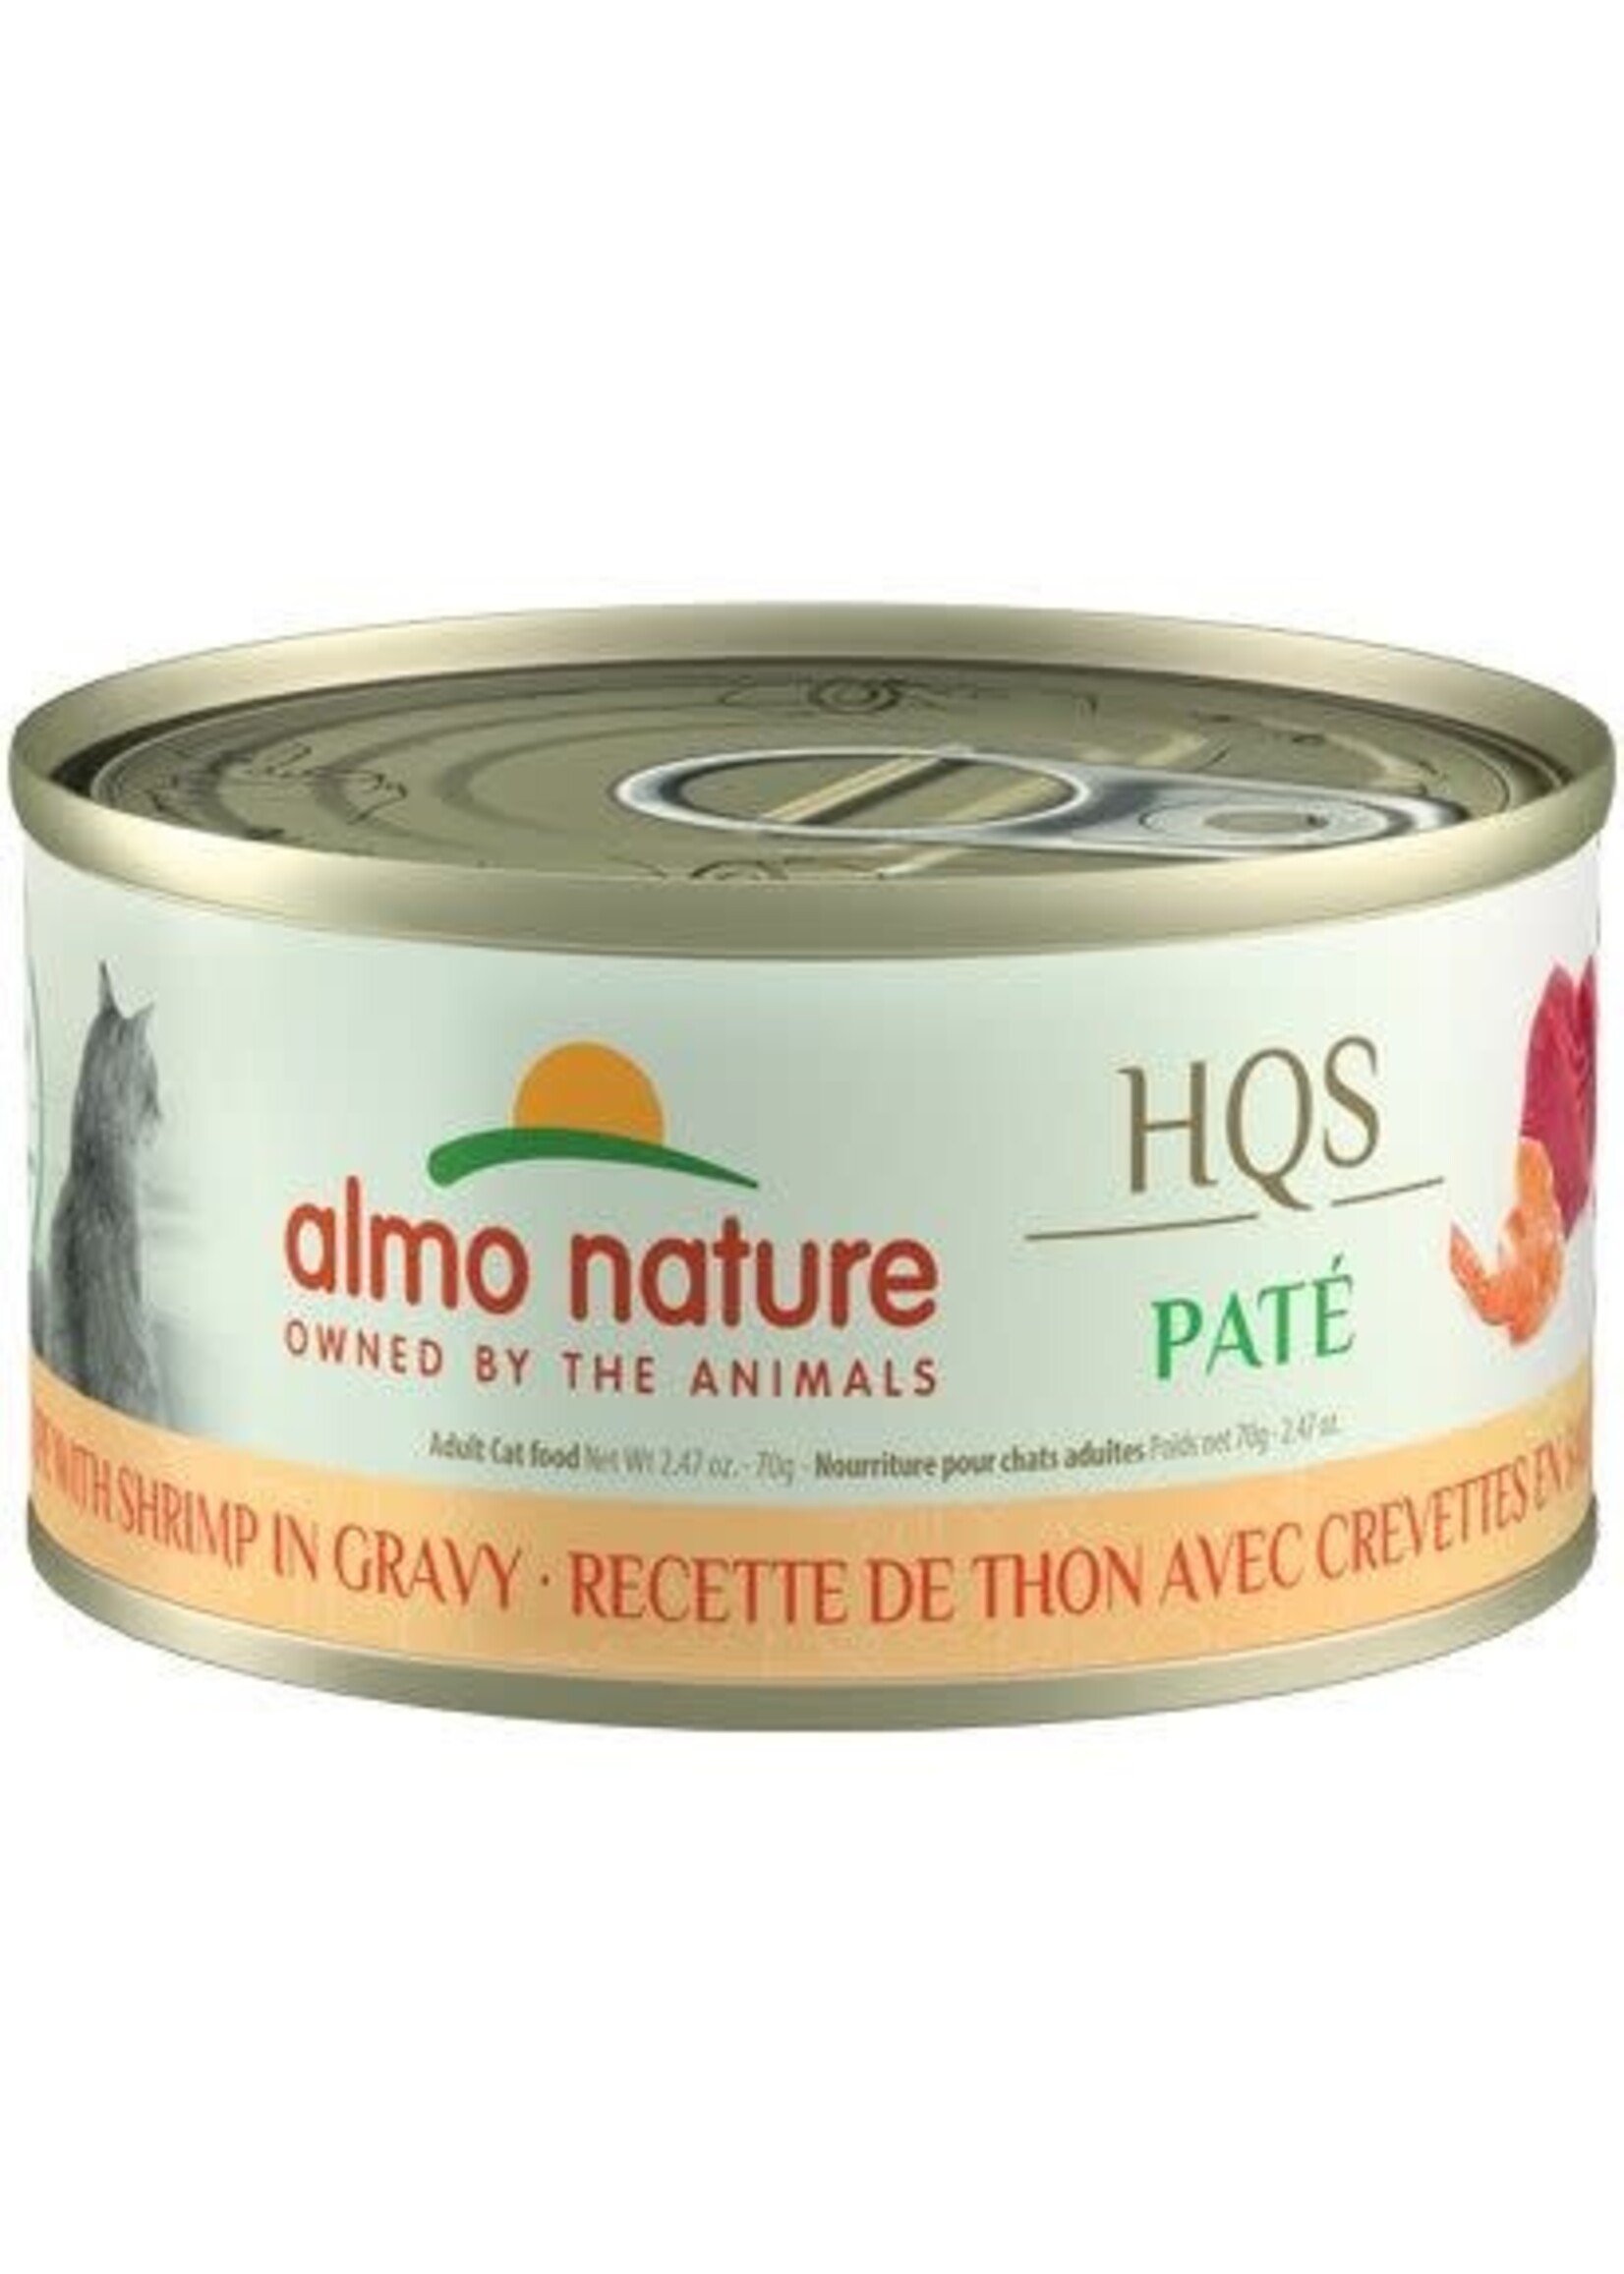 Almo Nature Almo nature HQS Natural chat - pâté au thon avec crevettes en sauce 70 gr